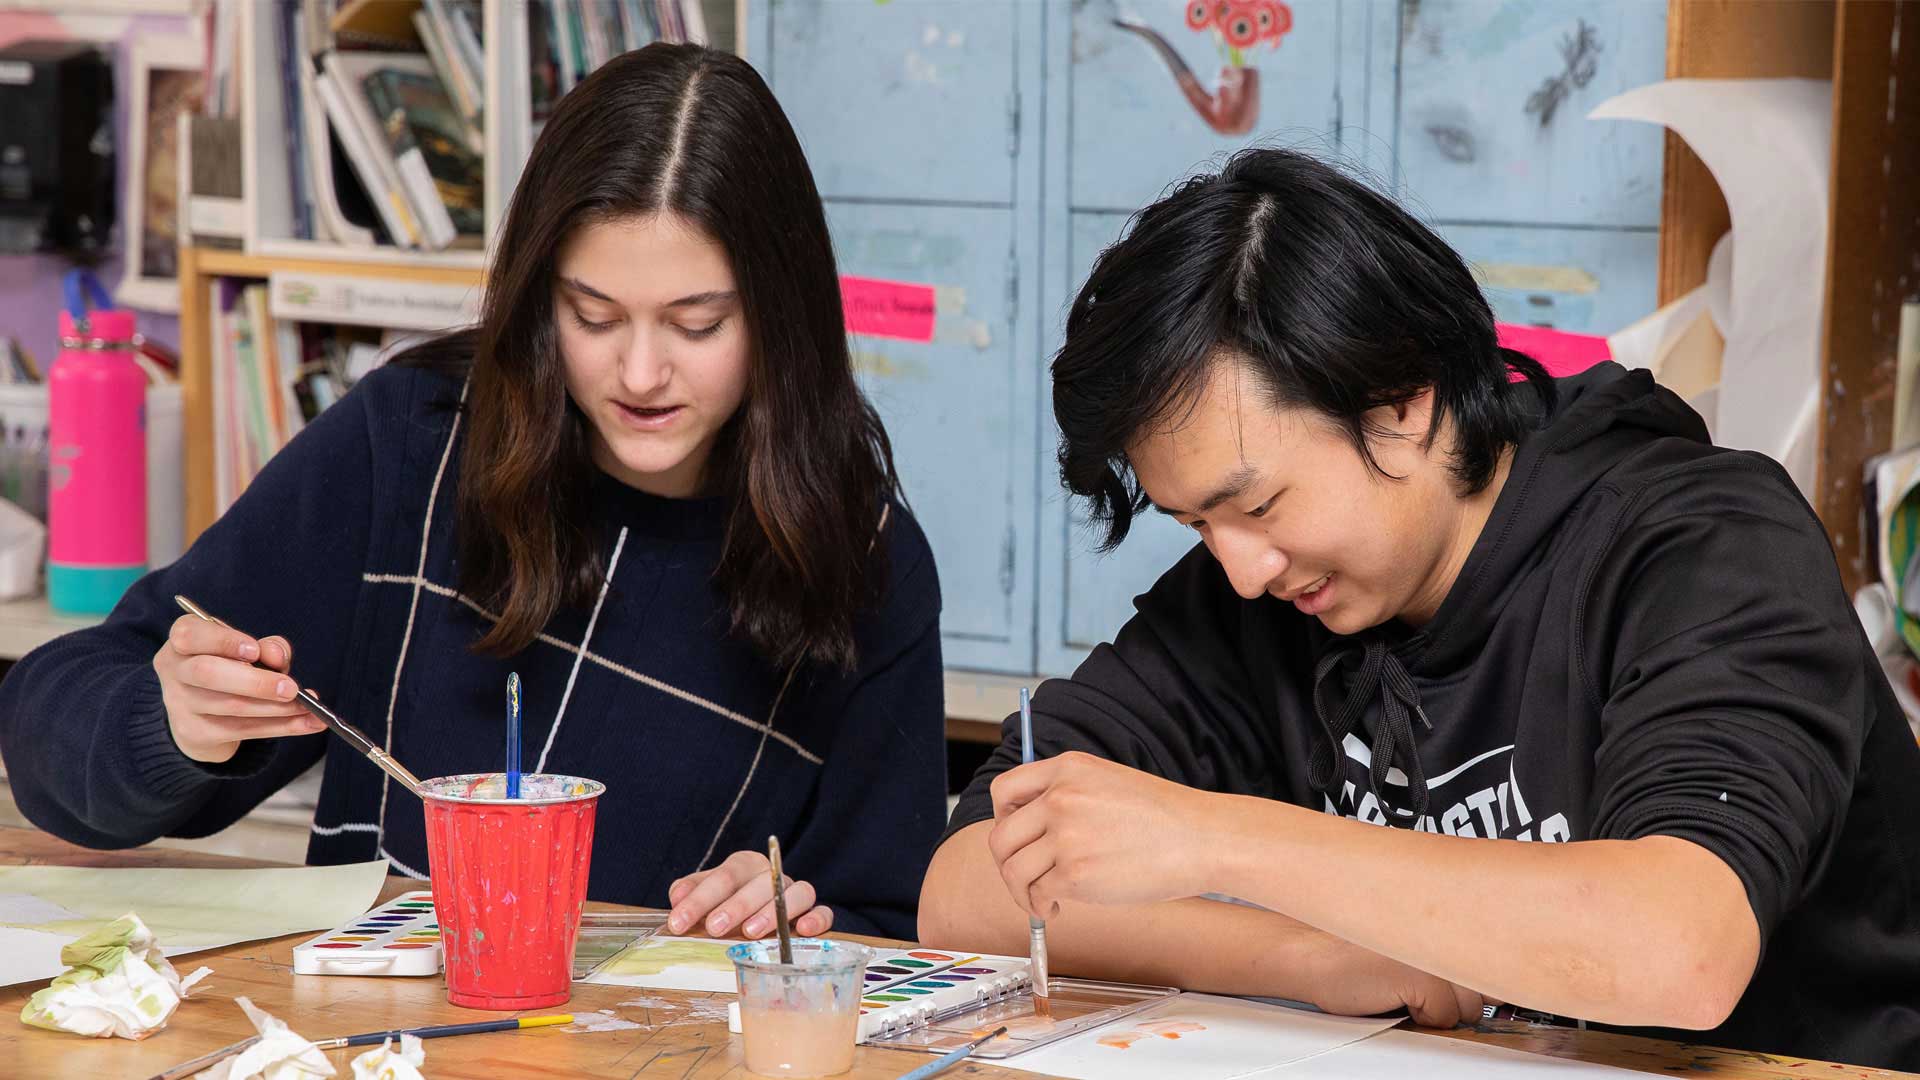 Двоє учнів середньої школи Фармінгтона демонструють свої творчі здібності на уроці малювання.